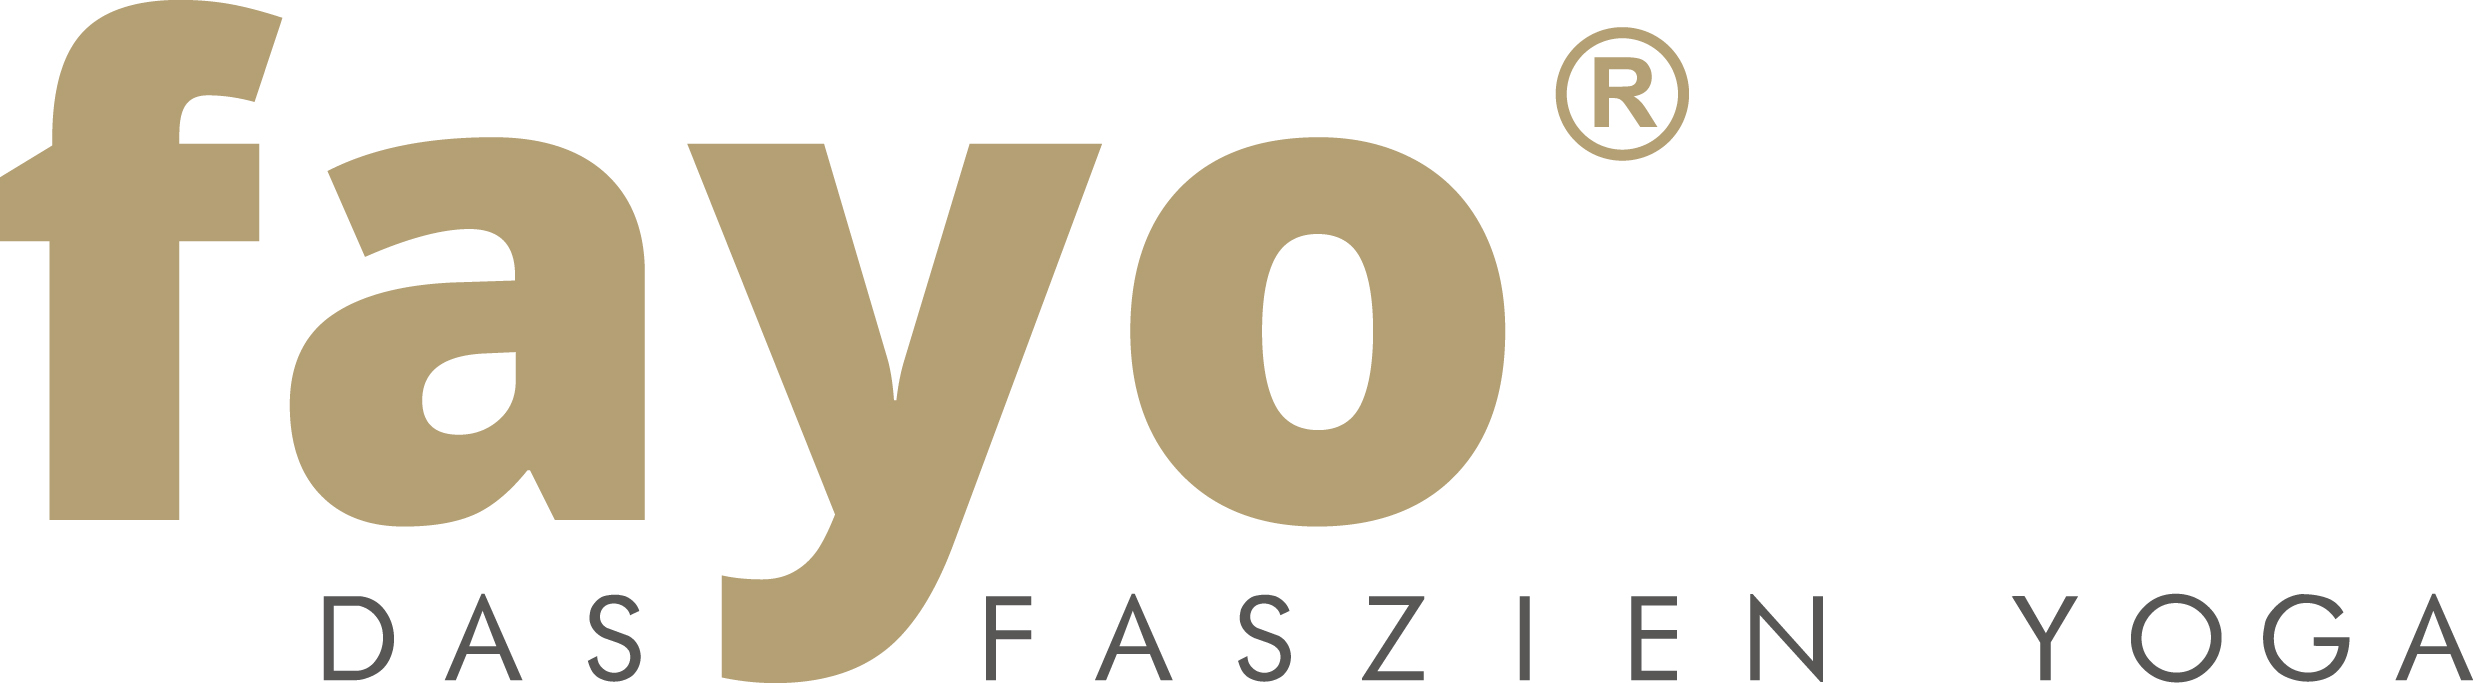 fayo - Das FaszienYog von Liescher &amp; Bracht